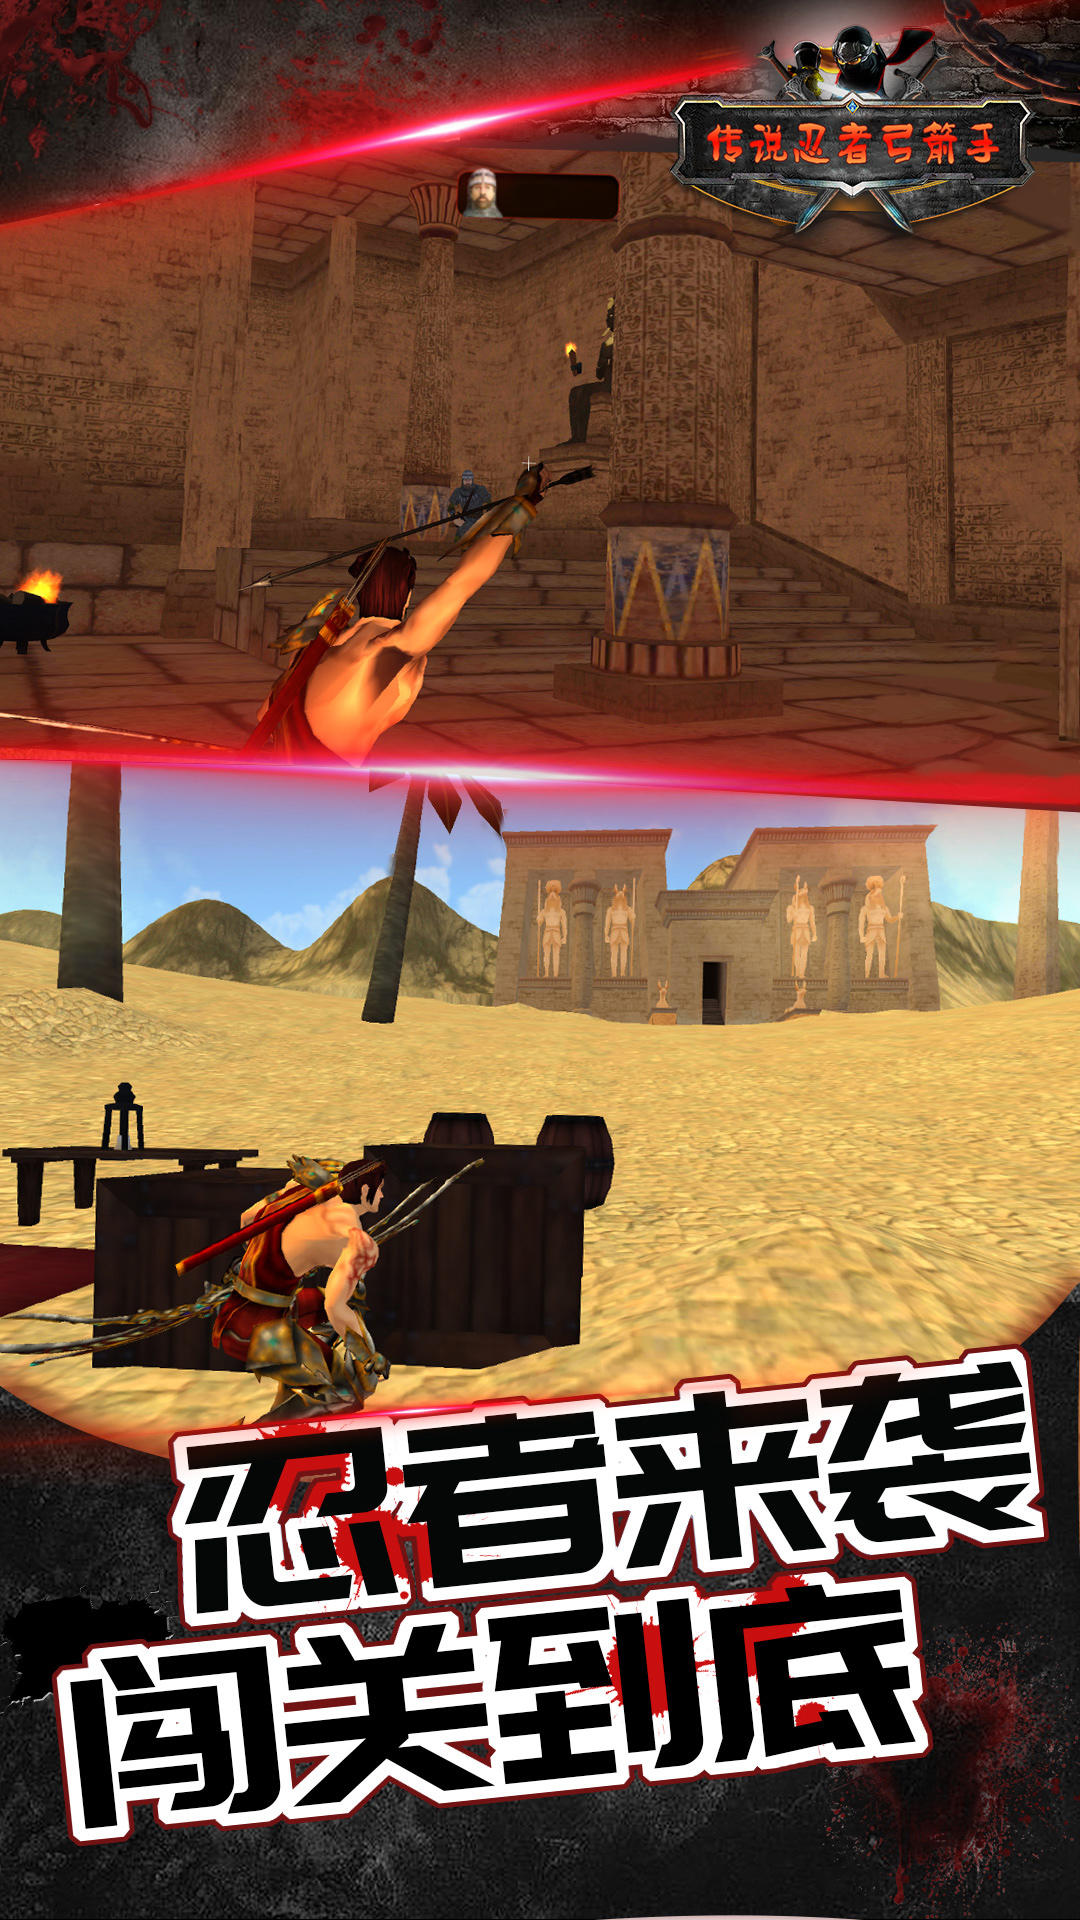 Screenshot 1 of Legenda Pemanah Ninja 1.0.0